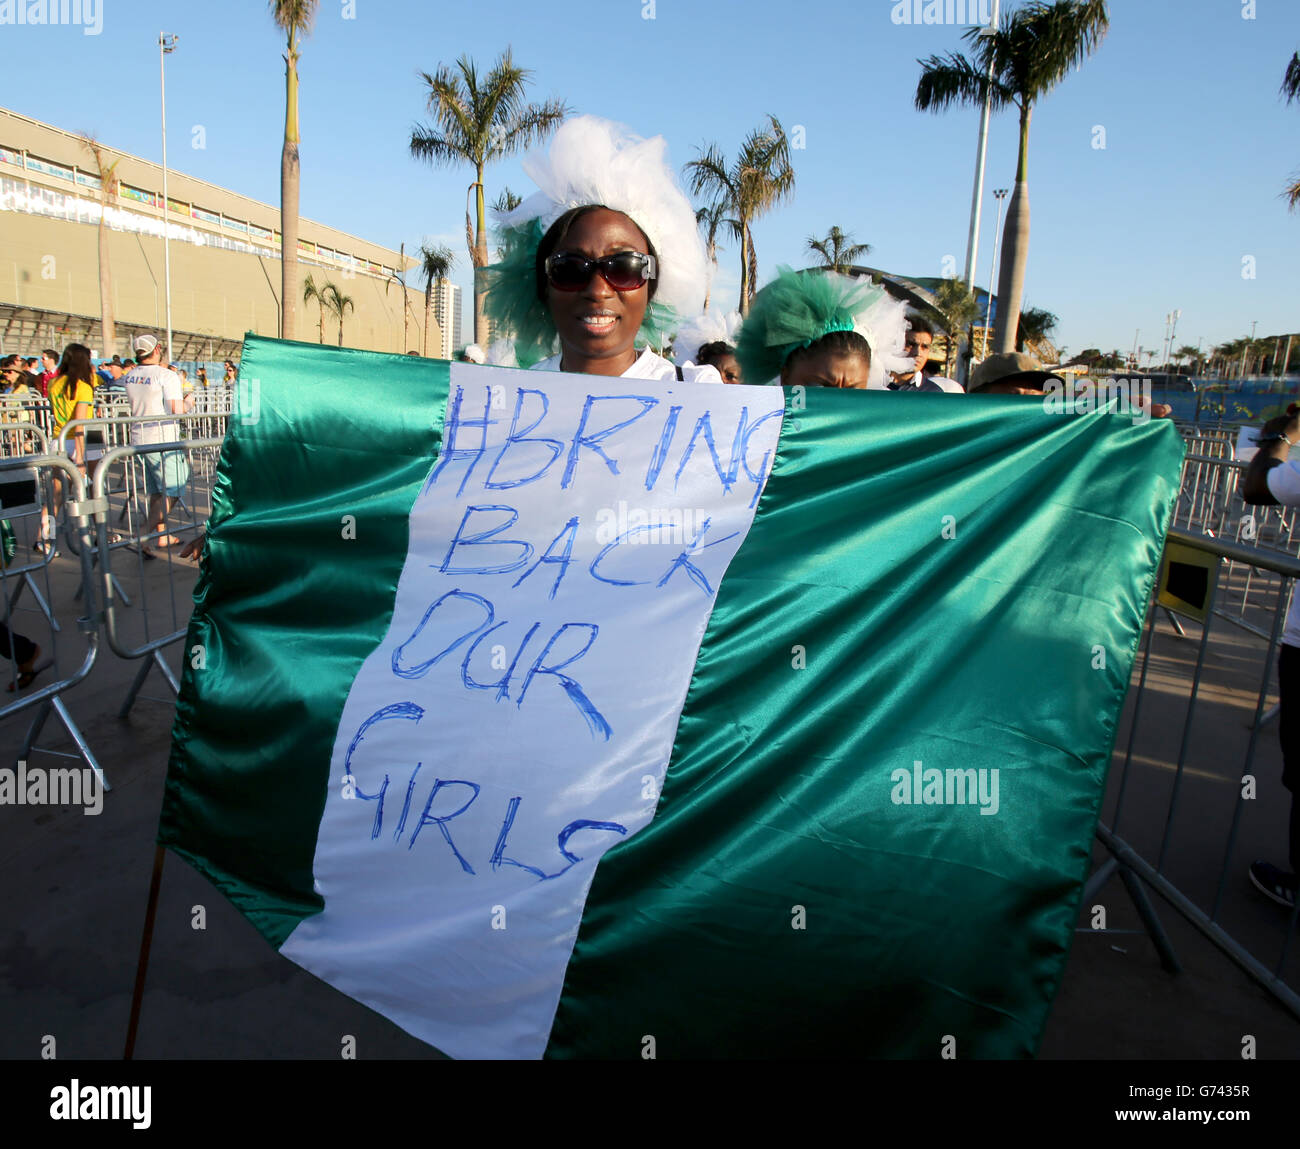 Calcio - Coppa del mondo FIFA 2014 - Gruppo F - Nigeria / Bosnia-Erzegovina - Arena Pantanal. Un fan della Nigeria tiene in mano una bandiera adornata "portare indietro le nostre ragazze" all'esterno dell'Arena Pantanal prima del calcio d'inizio Foto Stock